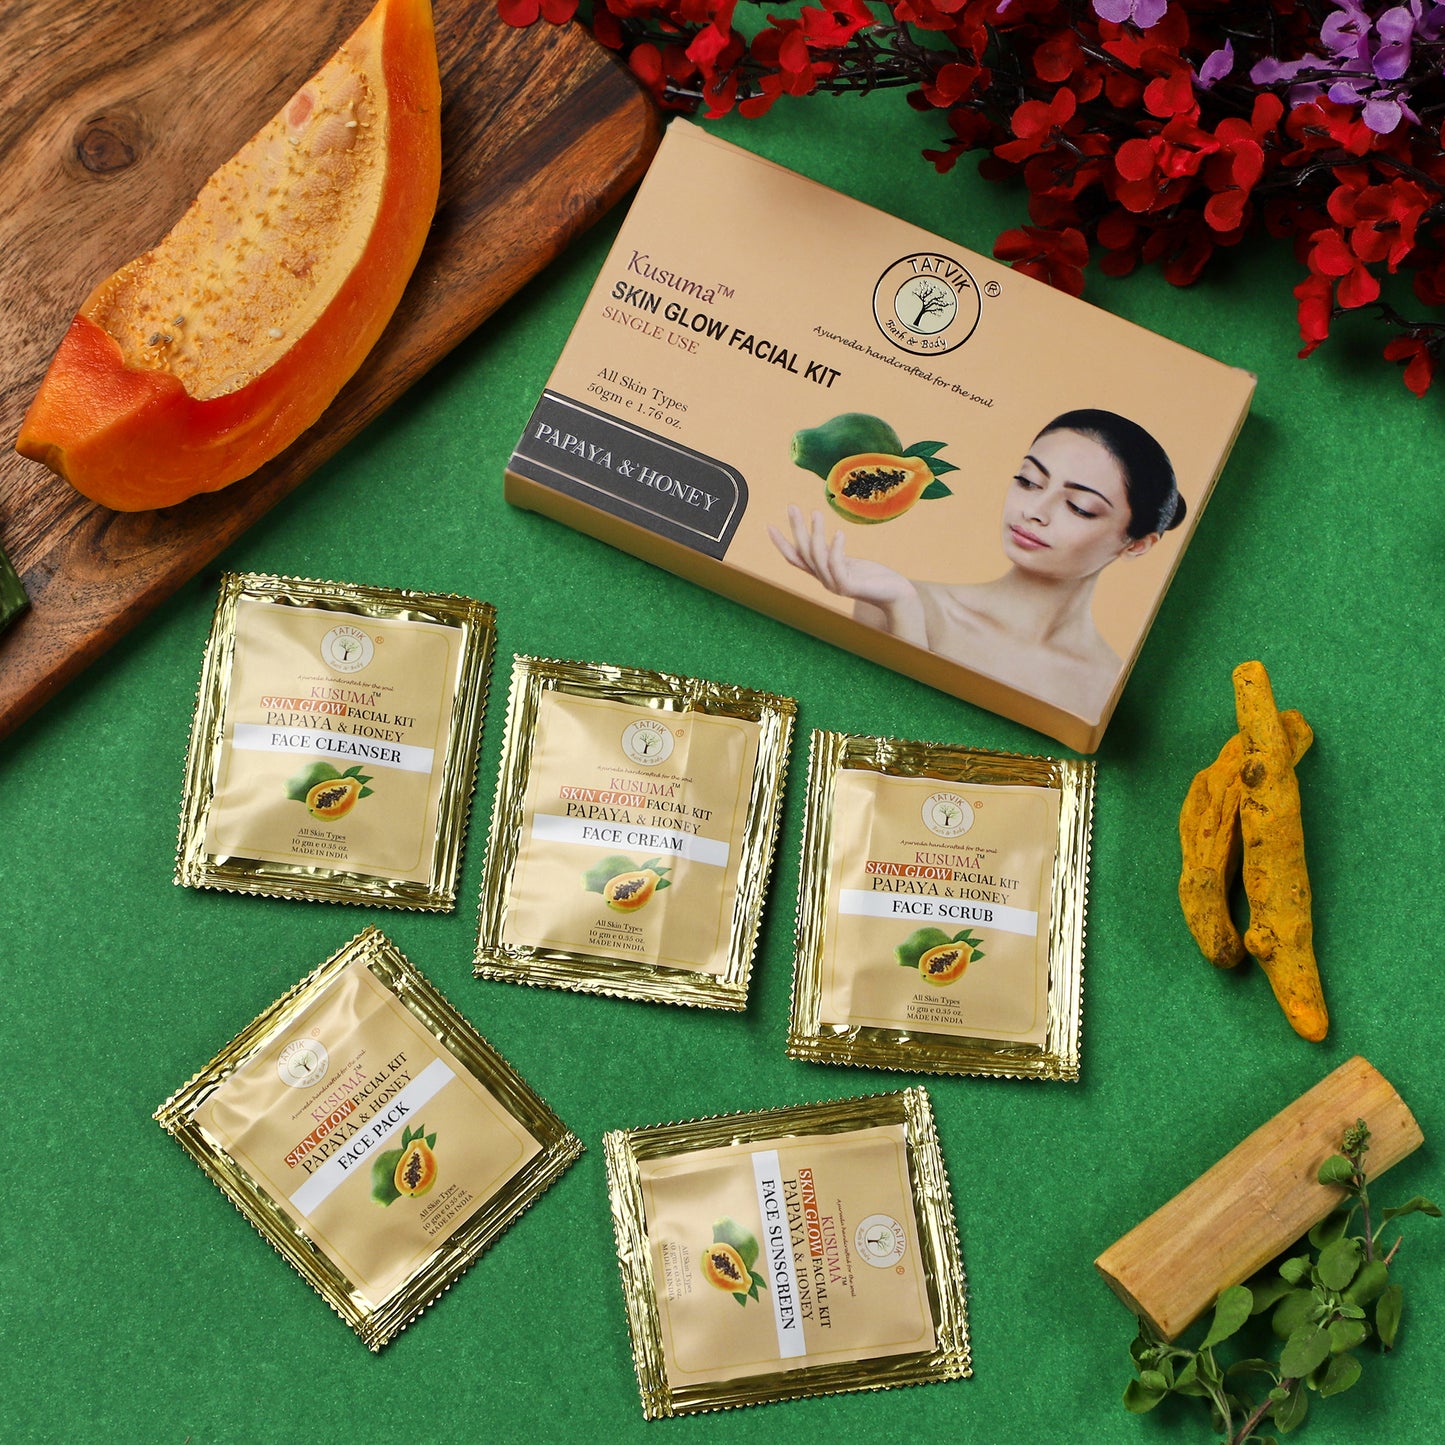 Kusuma Papaya & Honey Skin Glow - Facial Kit